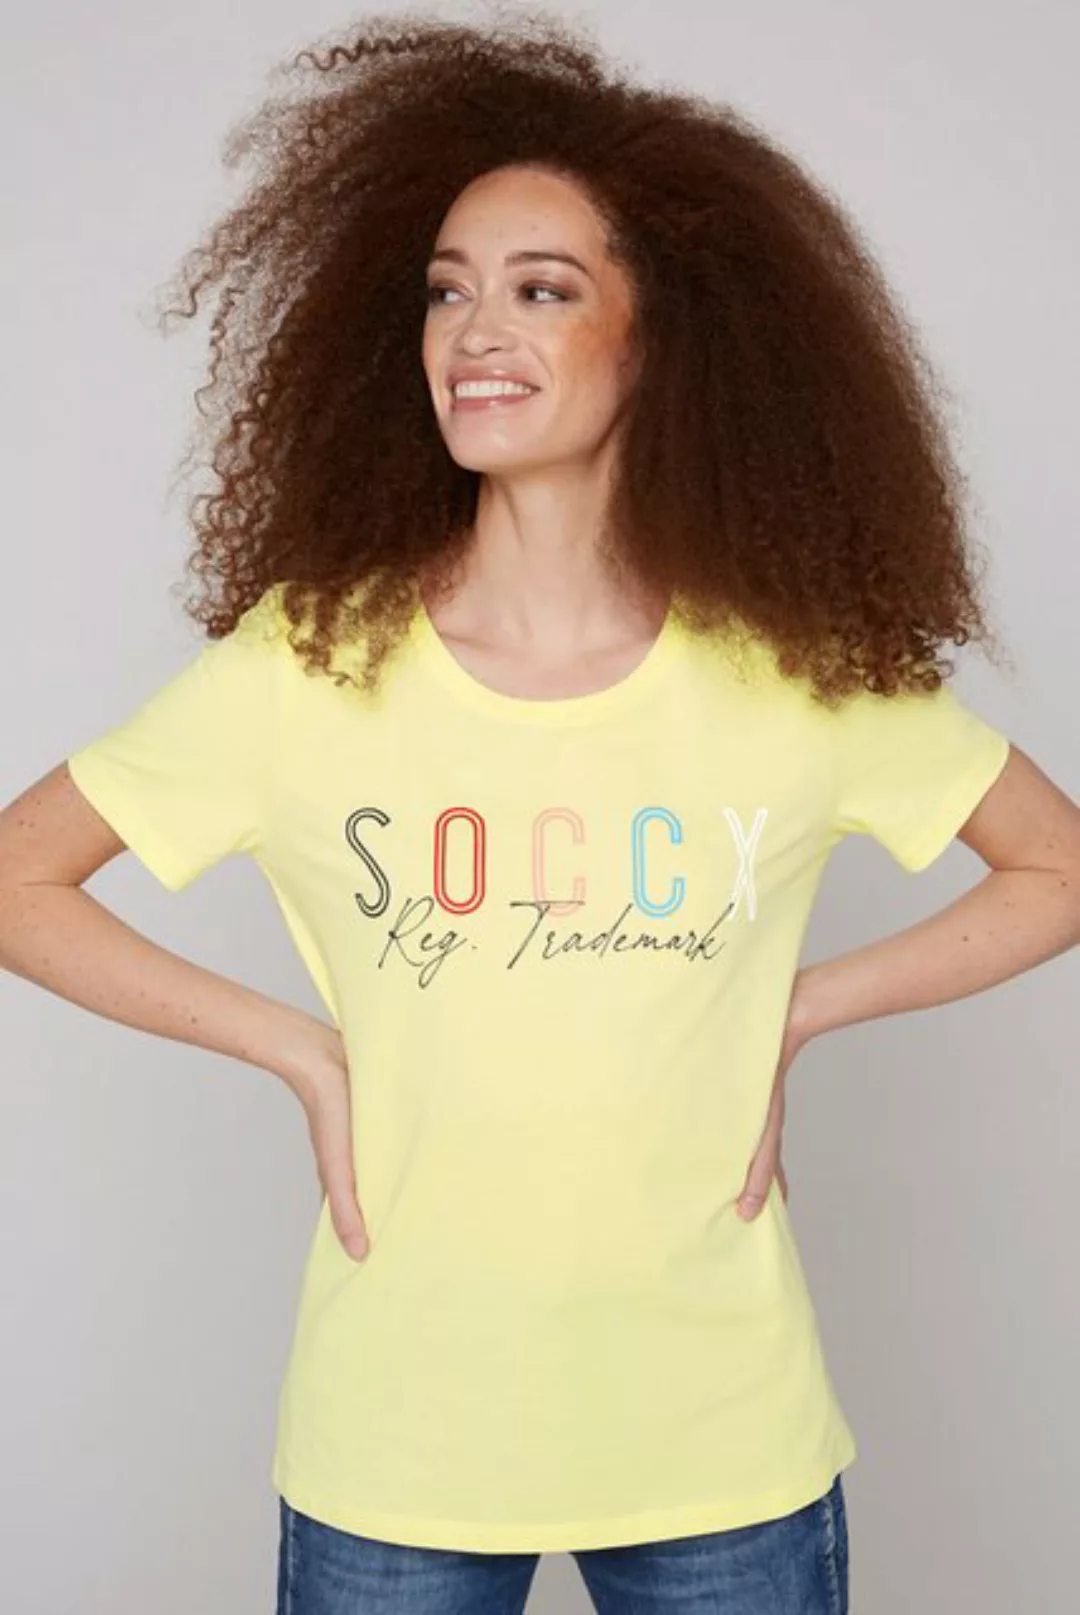 SOCCX Rundhalsshirt mit Baumwolle günstig online kaufen